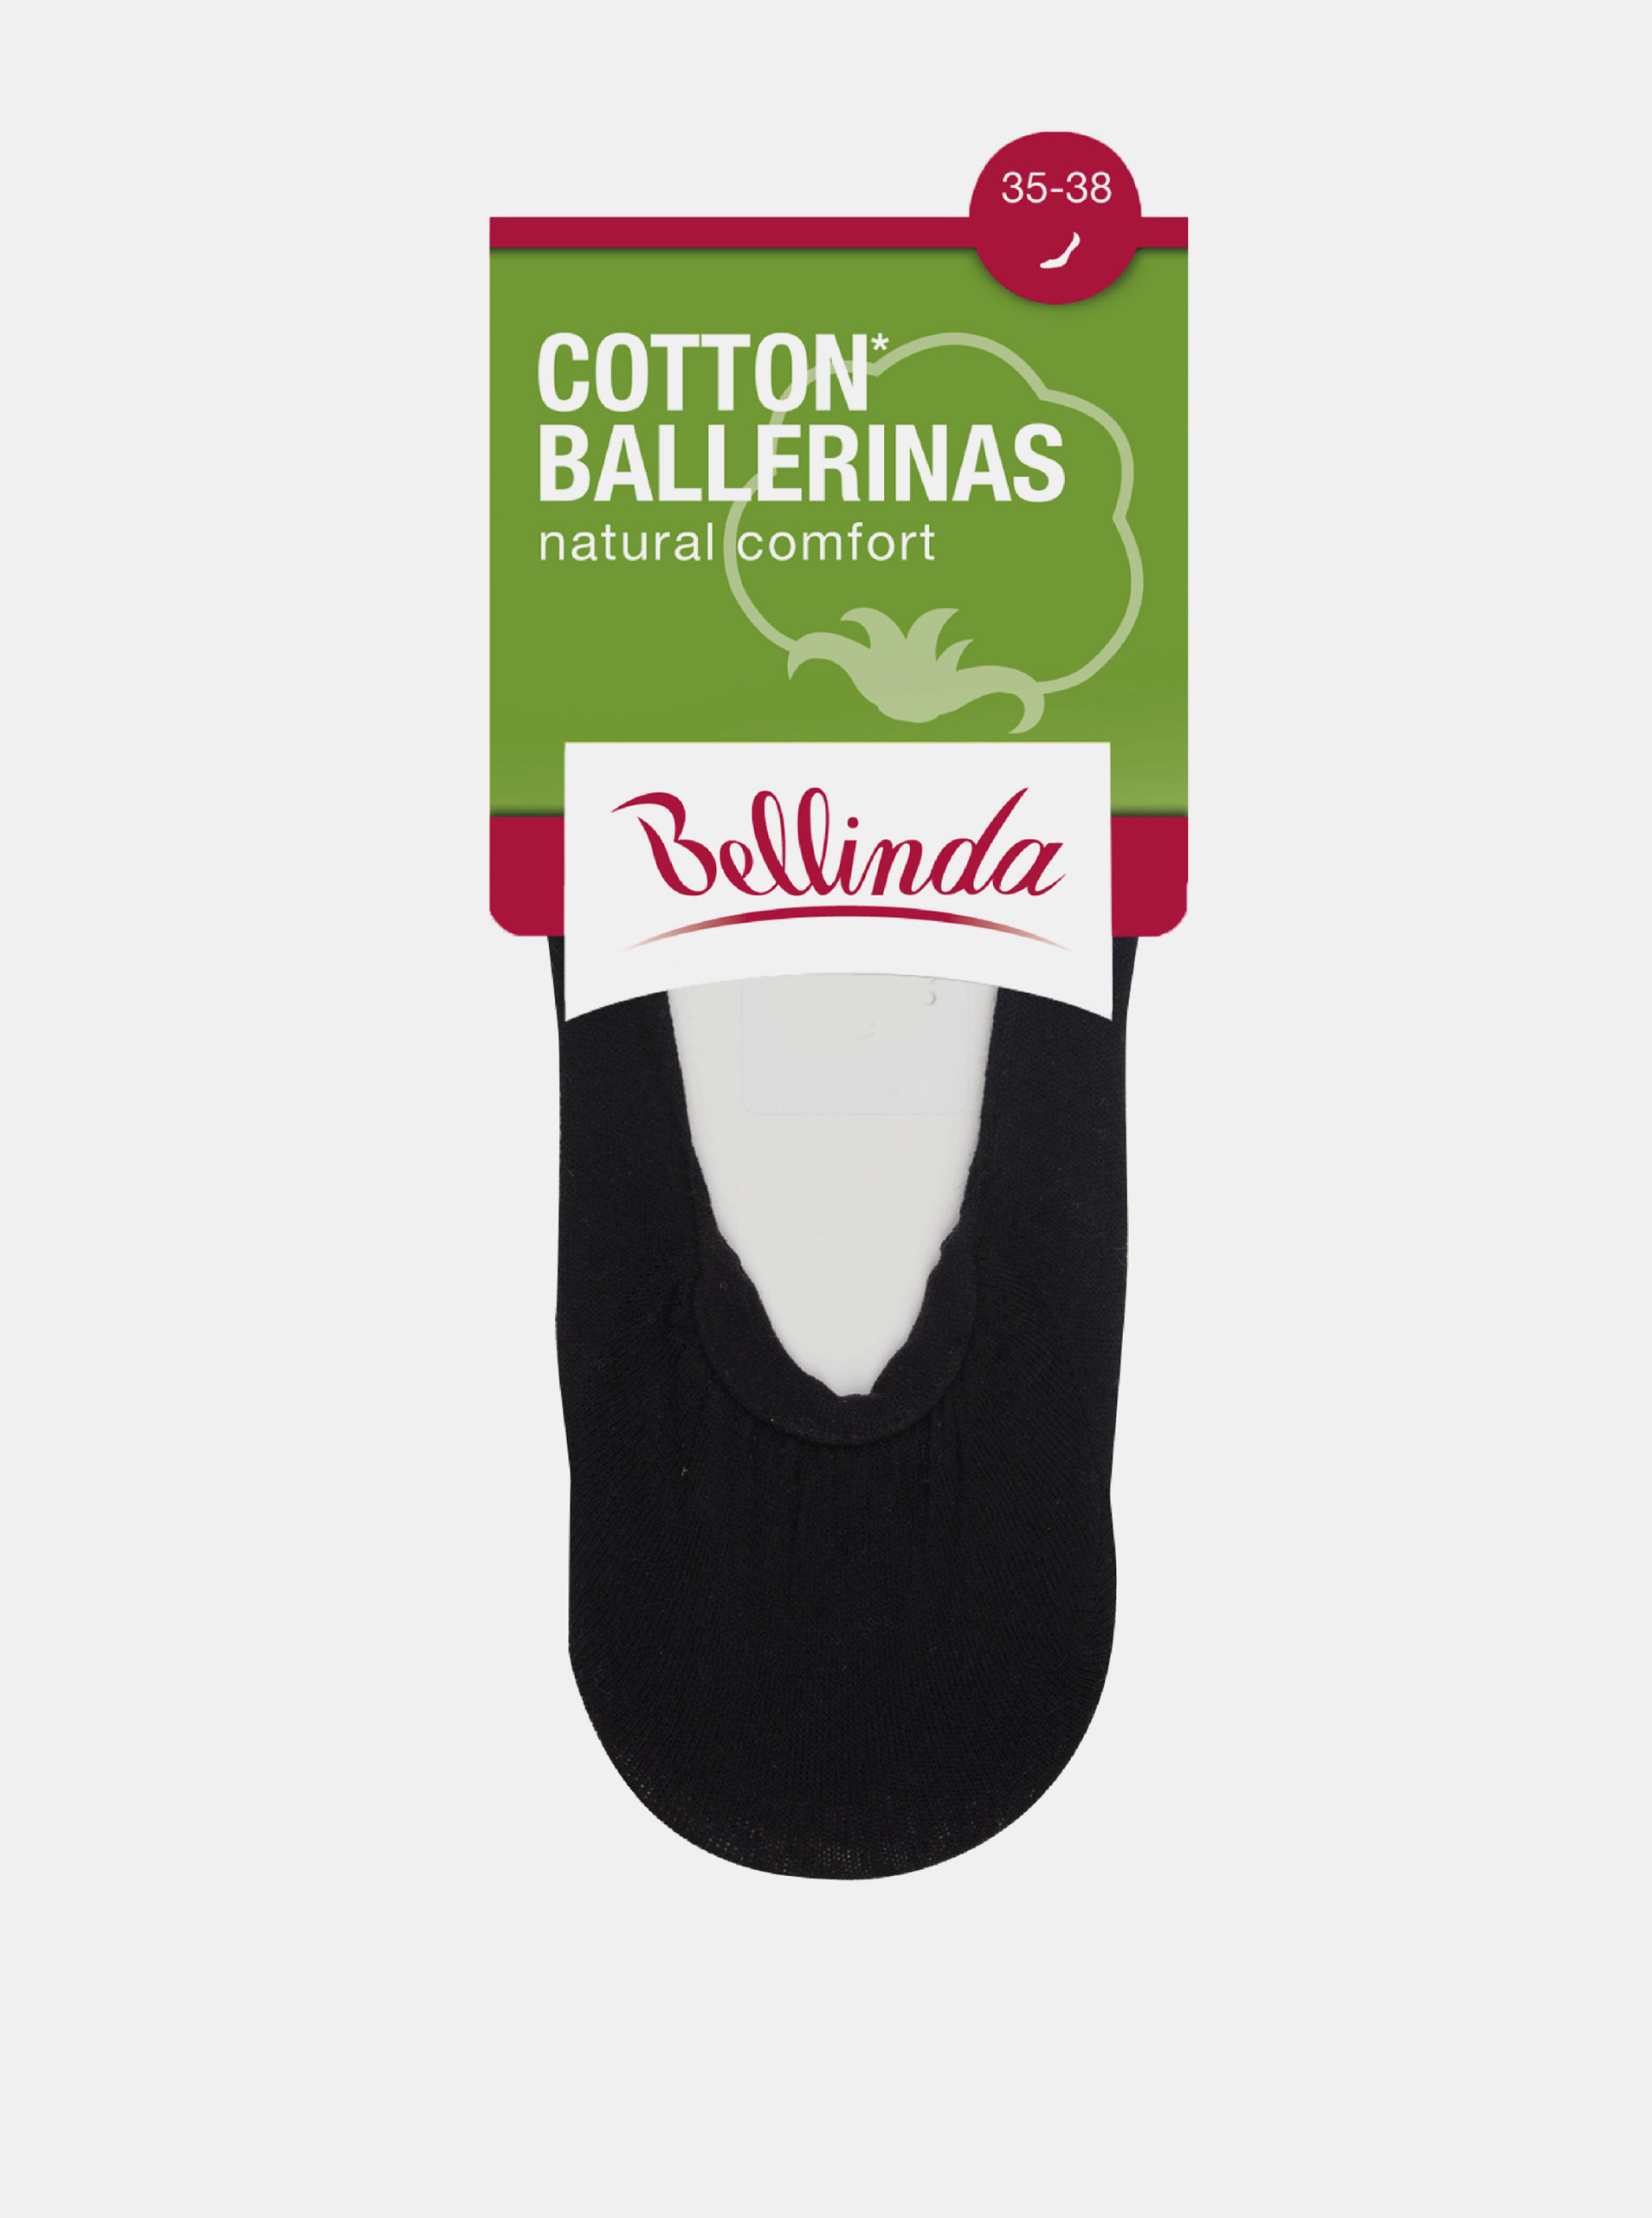 Fotografie Dámské bavlněné balerínky COTTON BALLERINAS - Dámské bavlněné ponožky vhodné do balerínek - černá